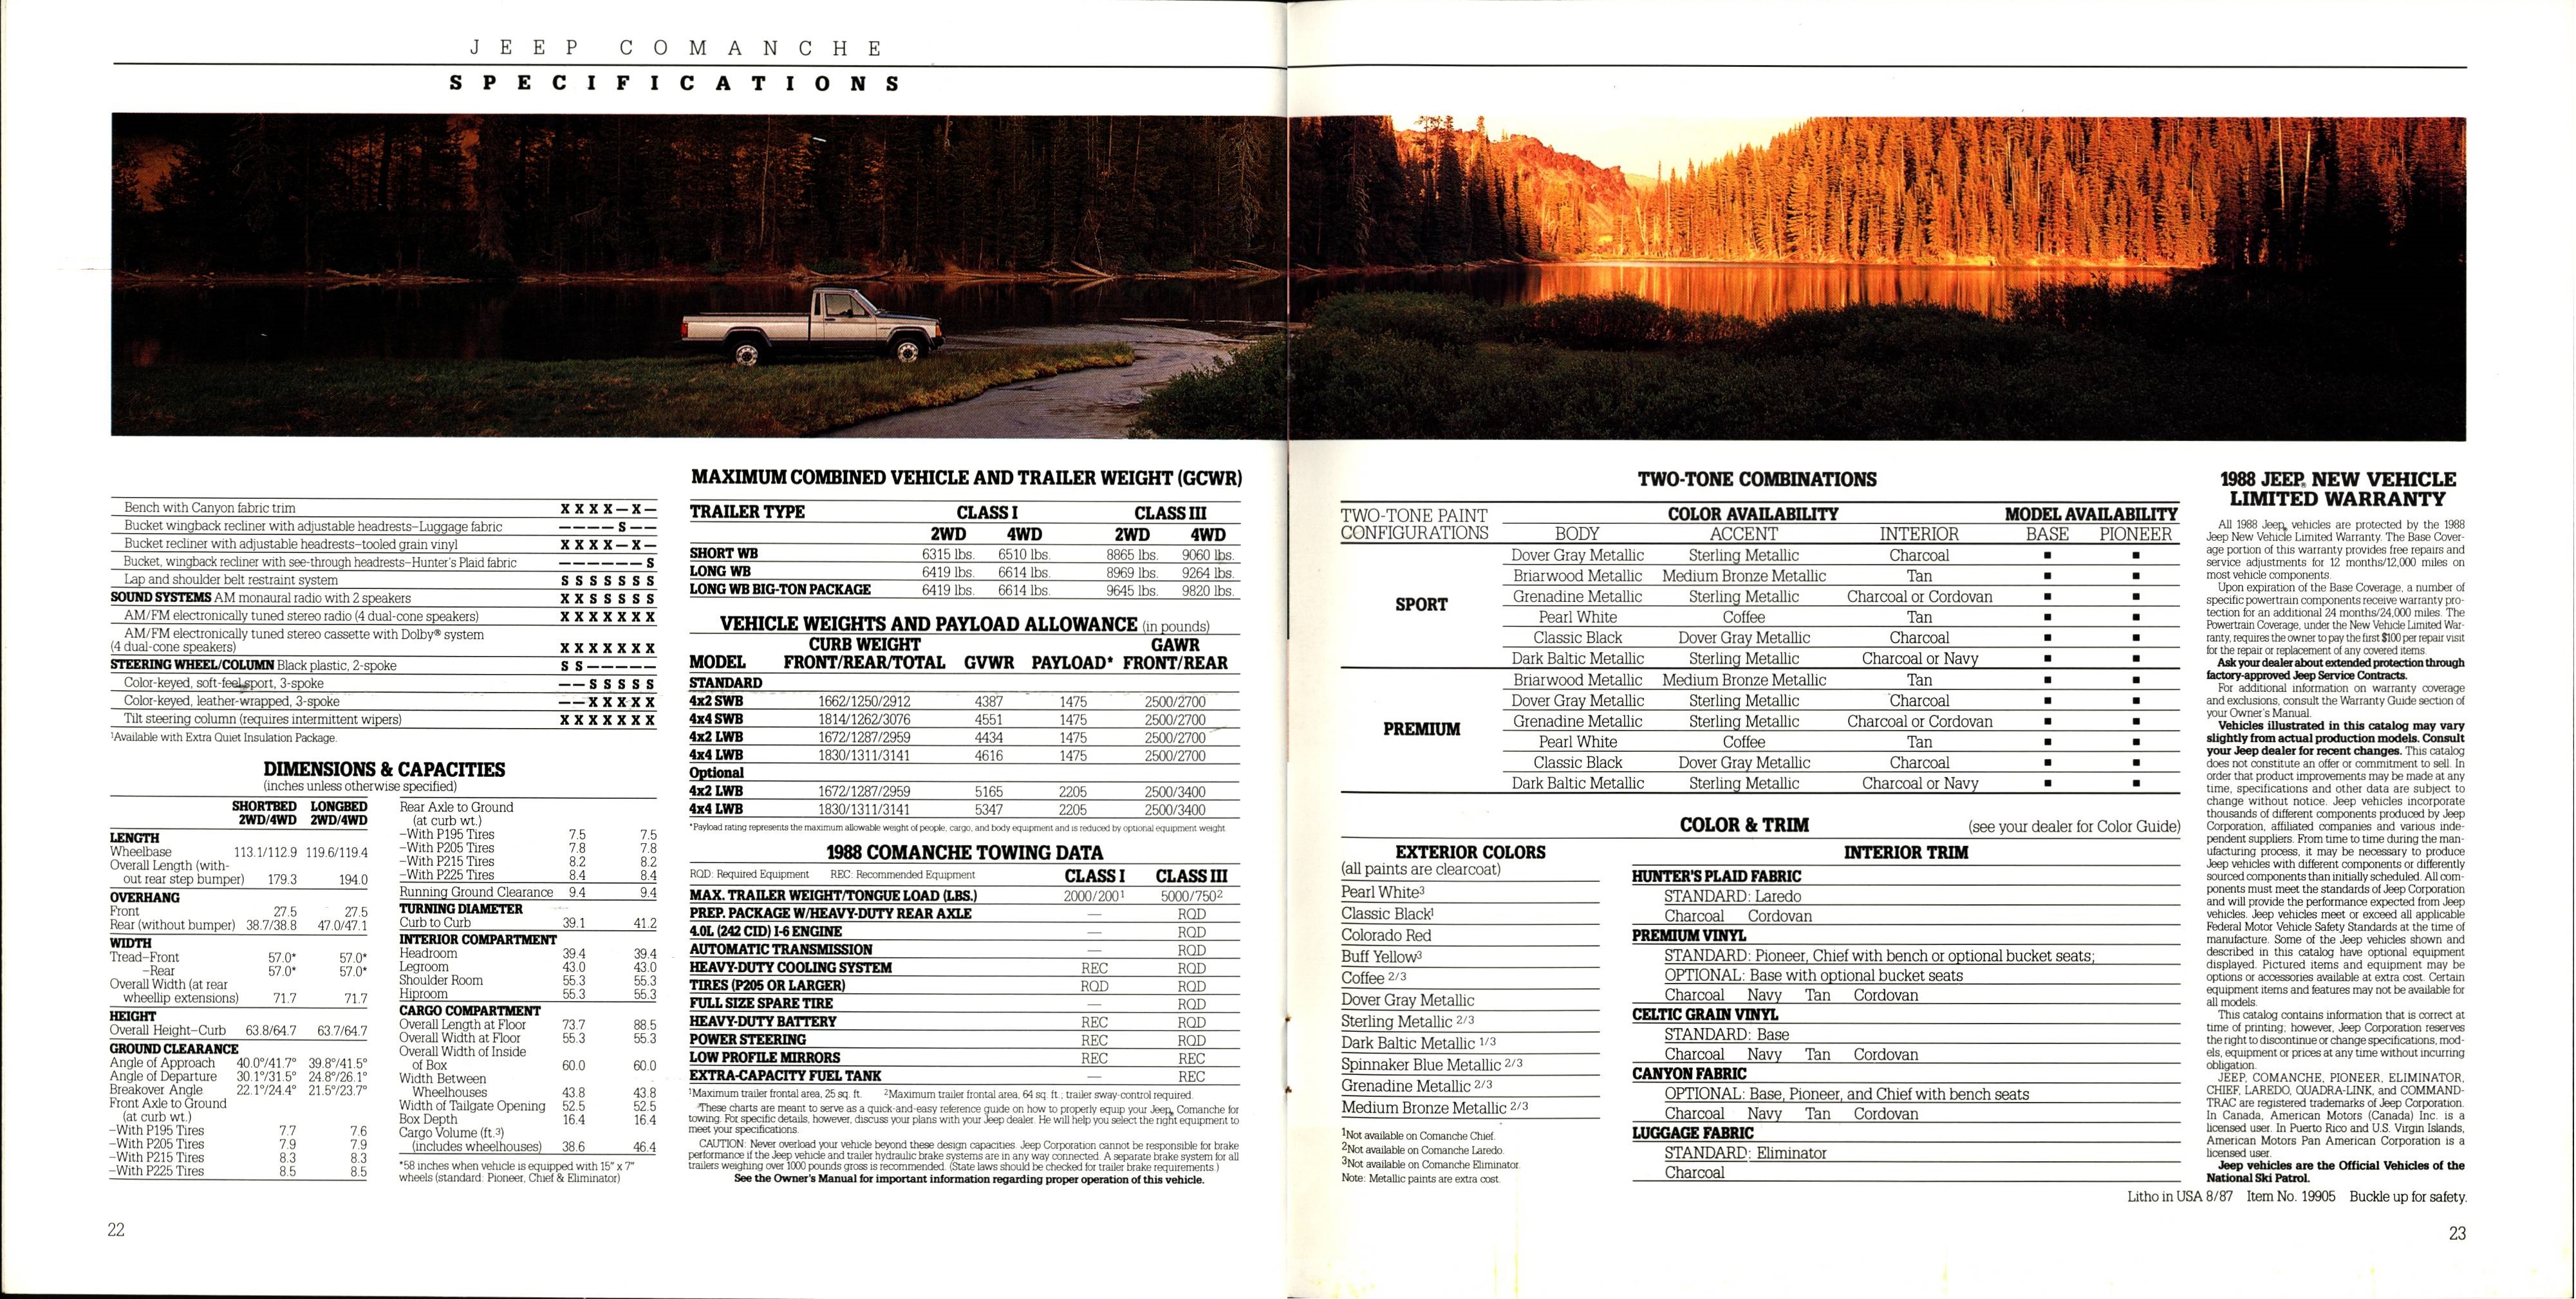 1988 Jeep Comanche Brochure 22-23